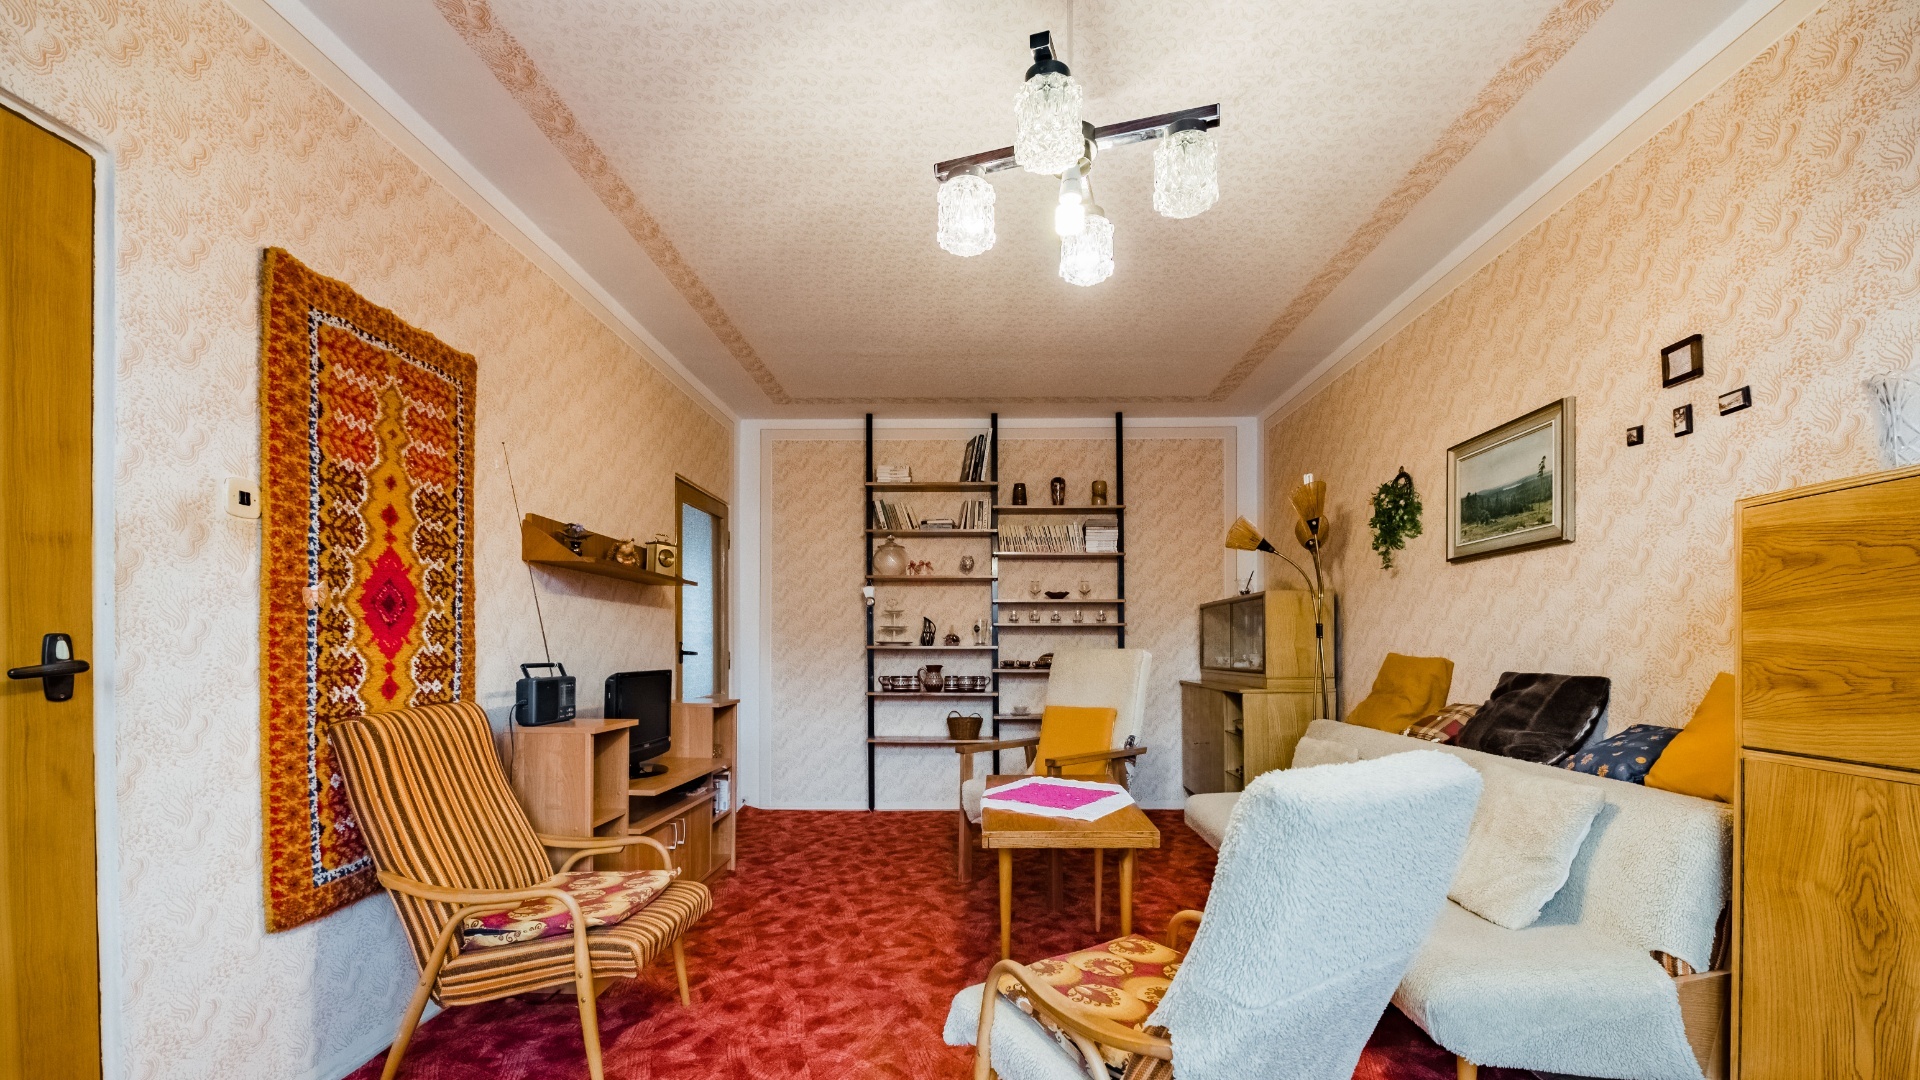 Prodej bytu 3+1 v osobním vlastnictví, 84 m², s balkónem a komorou, Tábor - Pražské sídliště